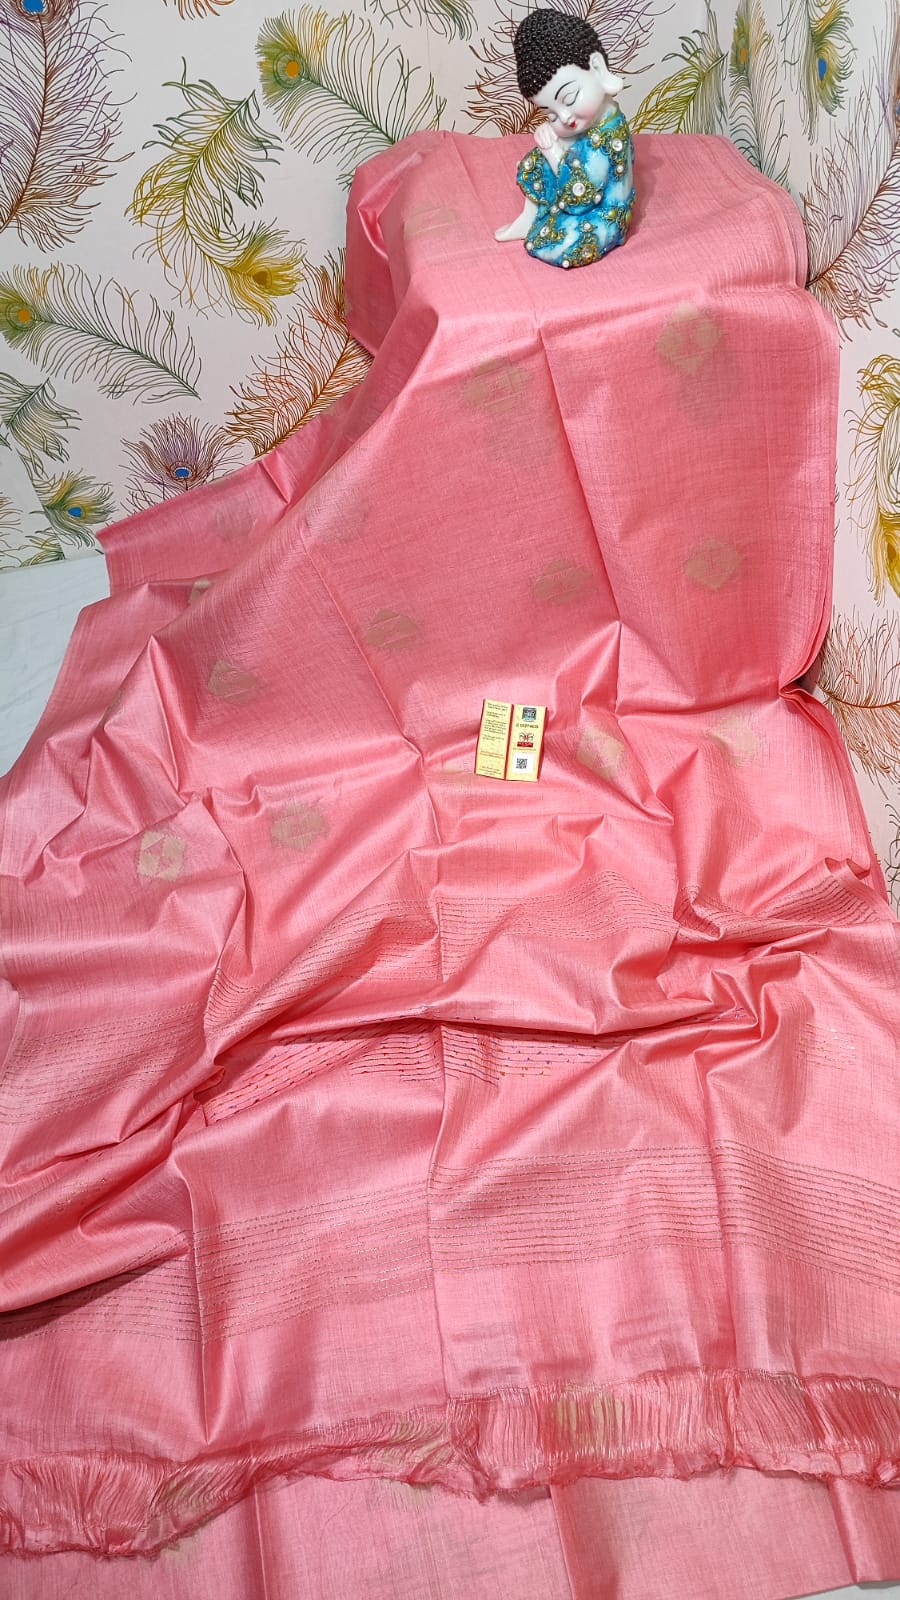 Weaved Kota viscous silk saree